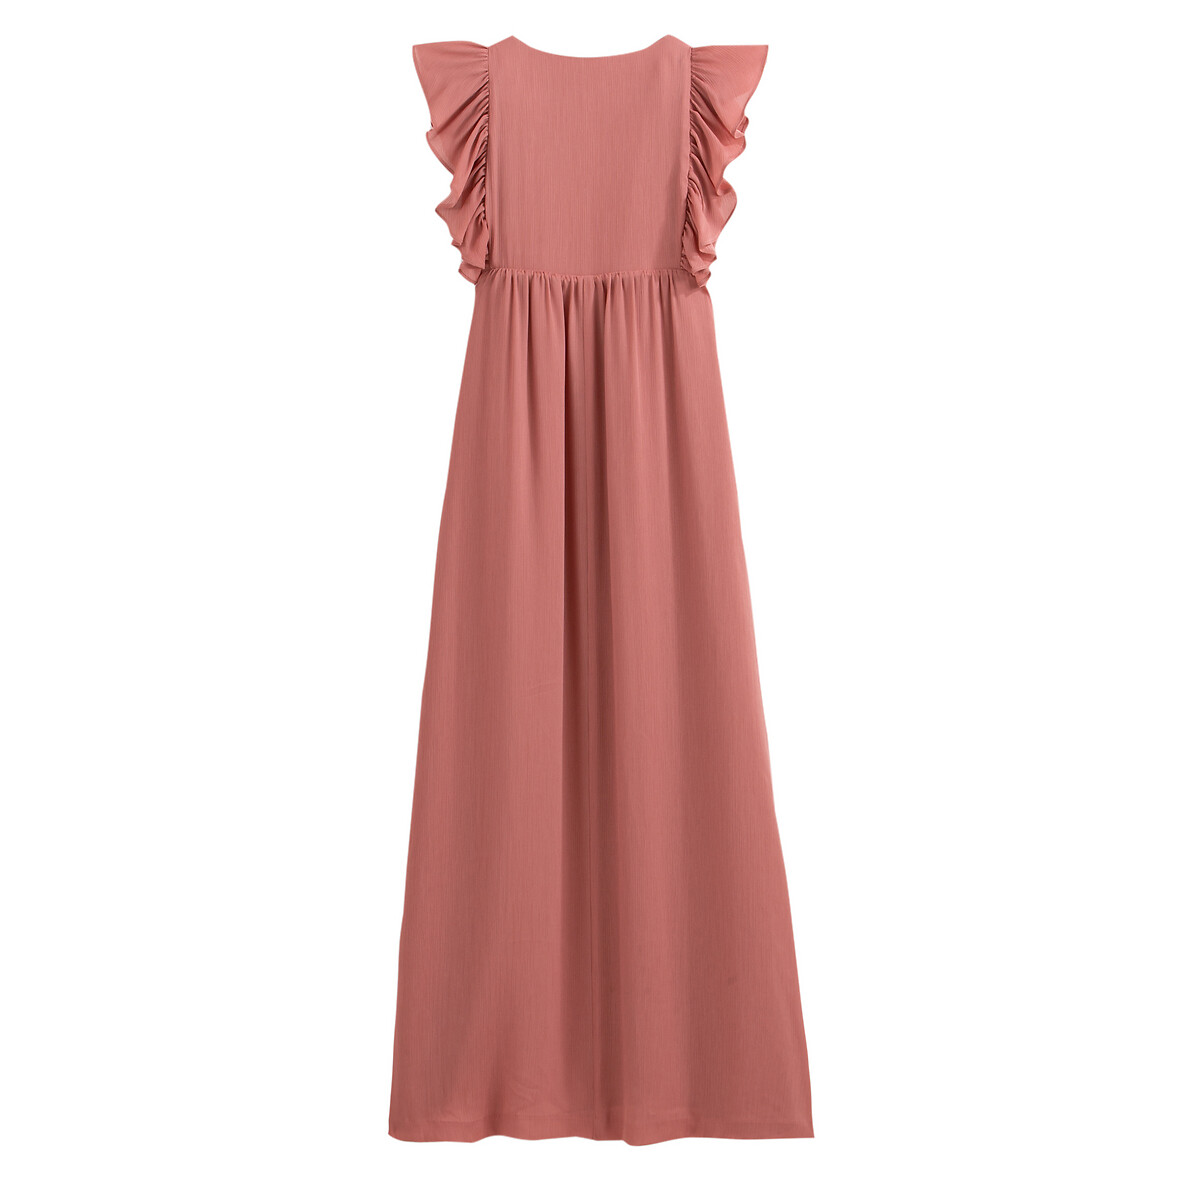 Платье La Redoute Длинное без рукавов 44 (FR) - 50 (RUS) розовый, размер 44 (FR) - 50 (RUS) Длинное без рукавов 44 (FR) - 50 (RUS) розовый - фото 3